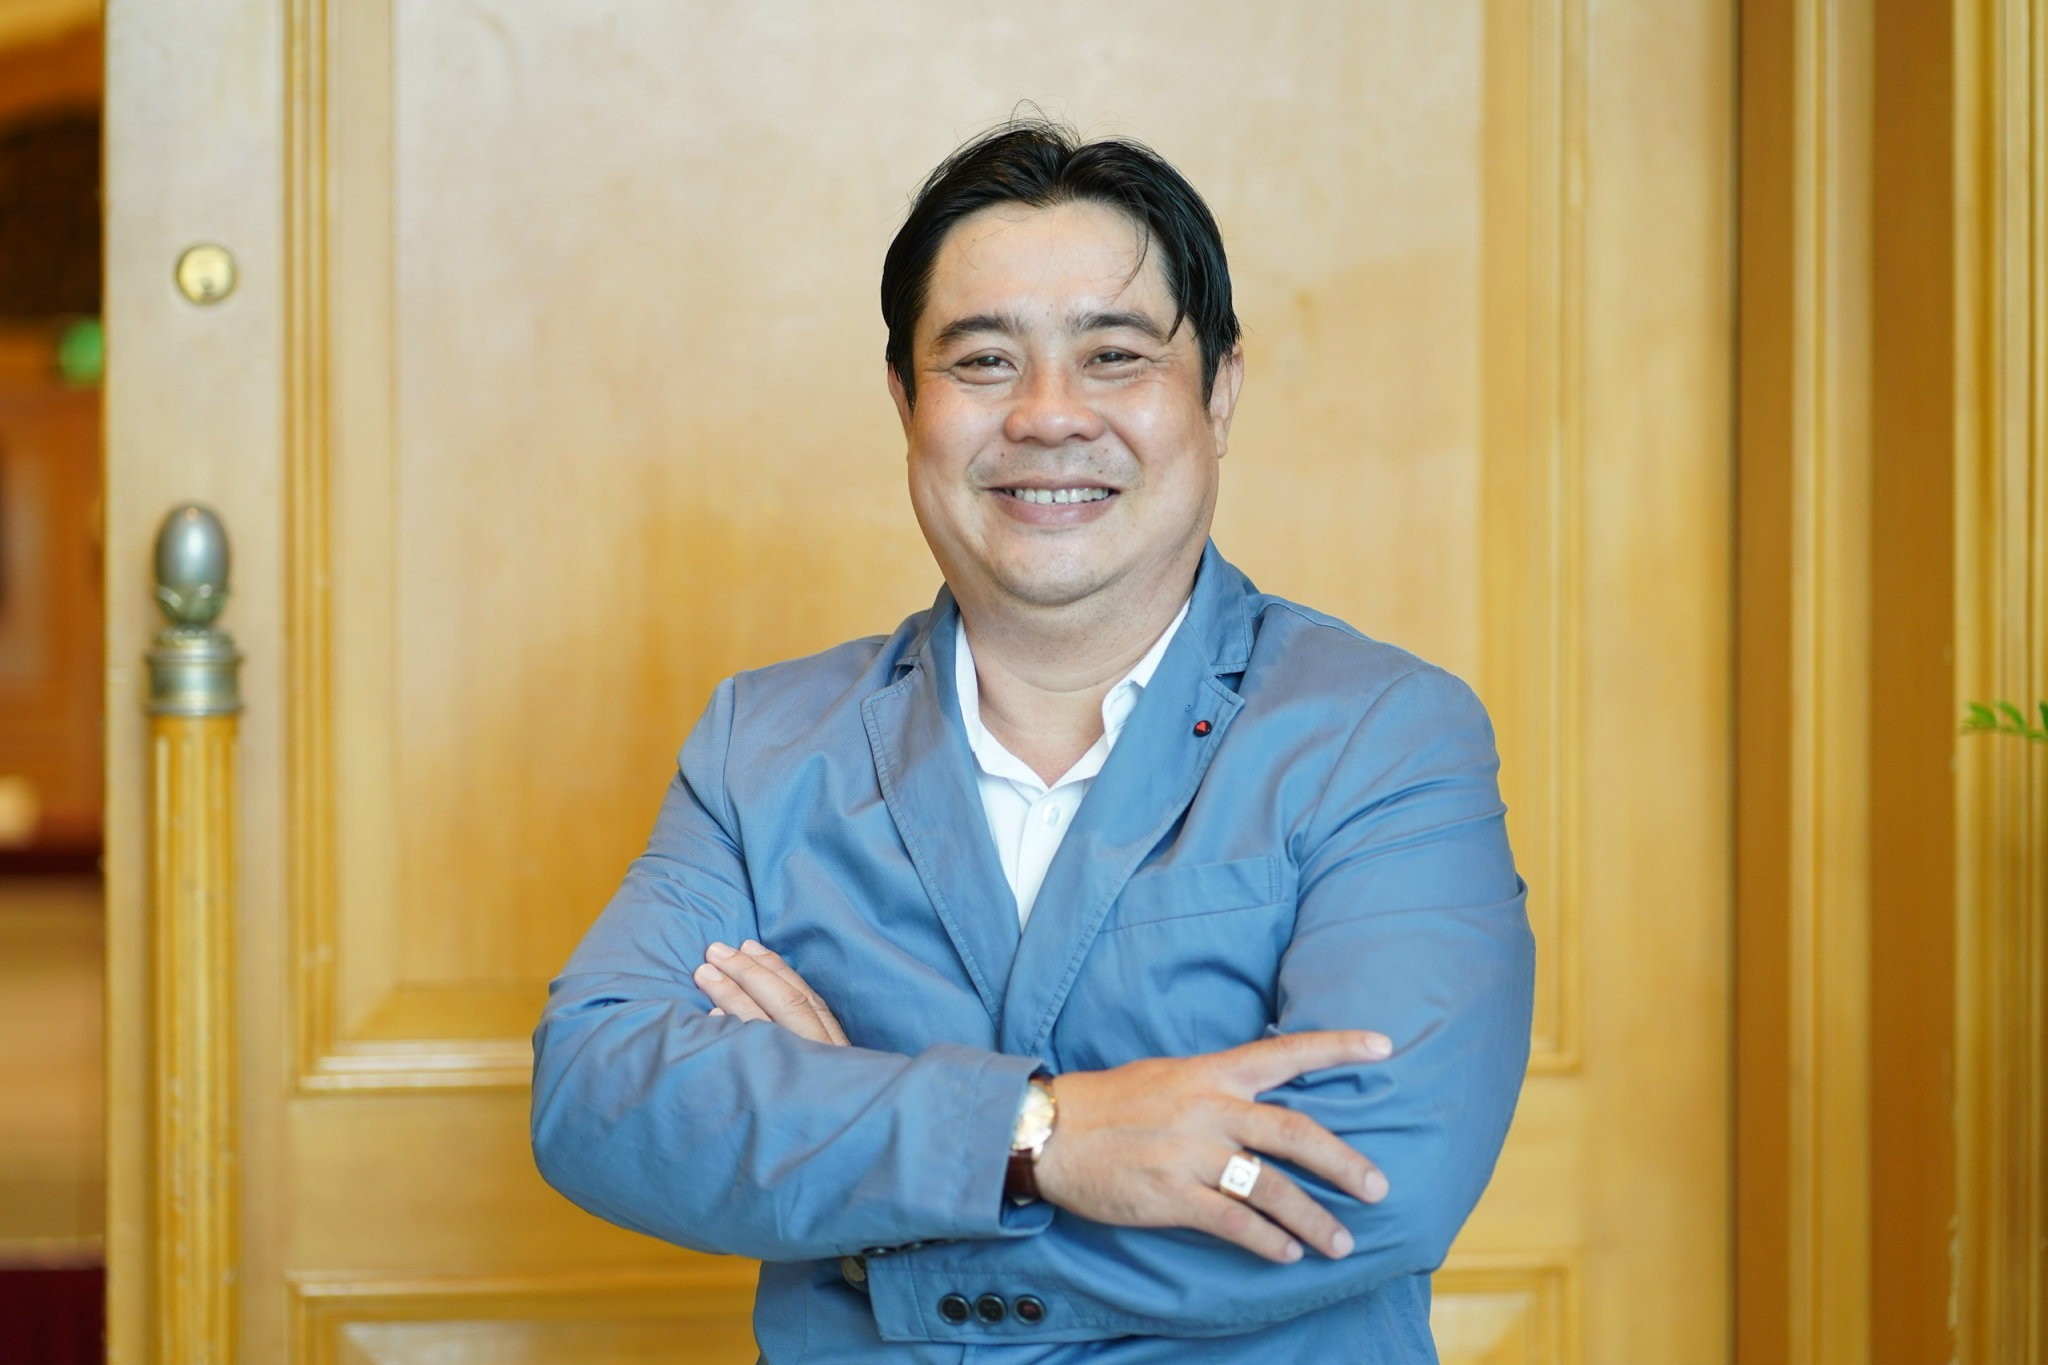 
Ông Tô Ngọc Trường Giang, Giám đốc Phát triển Dự án Trần Liên Hưng.
